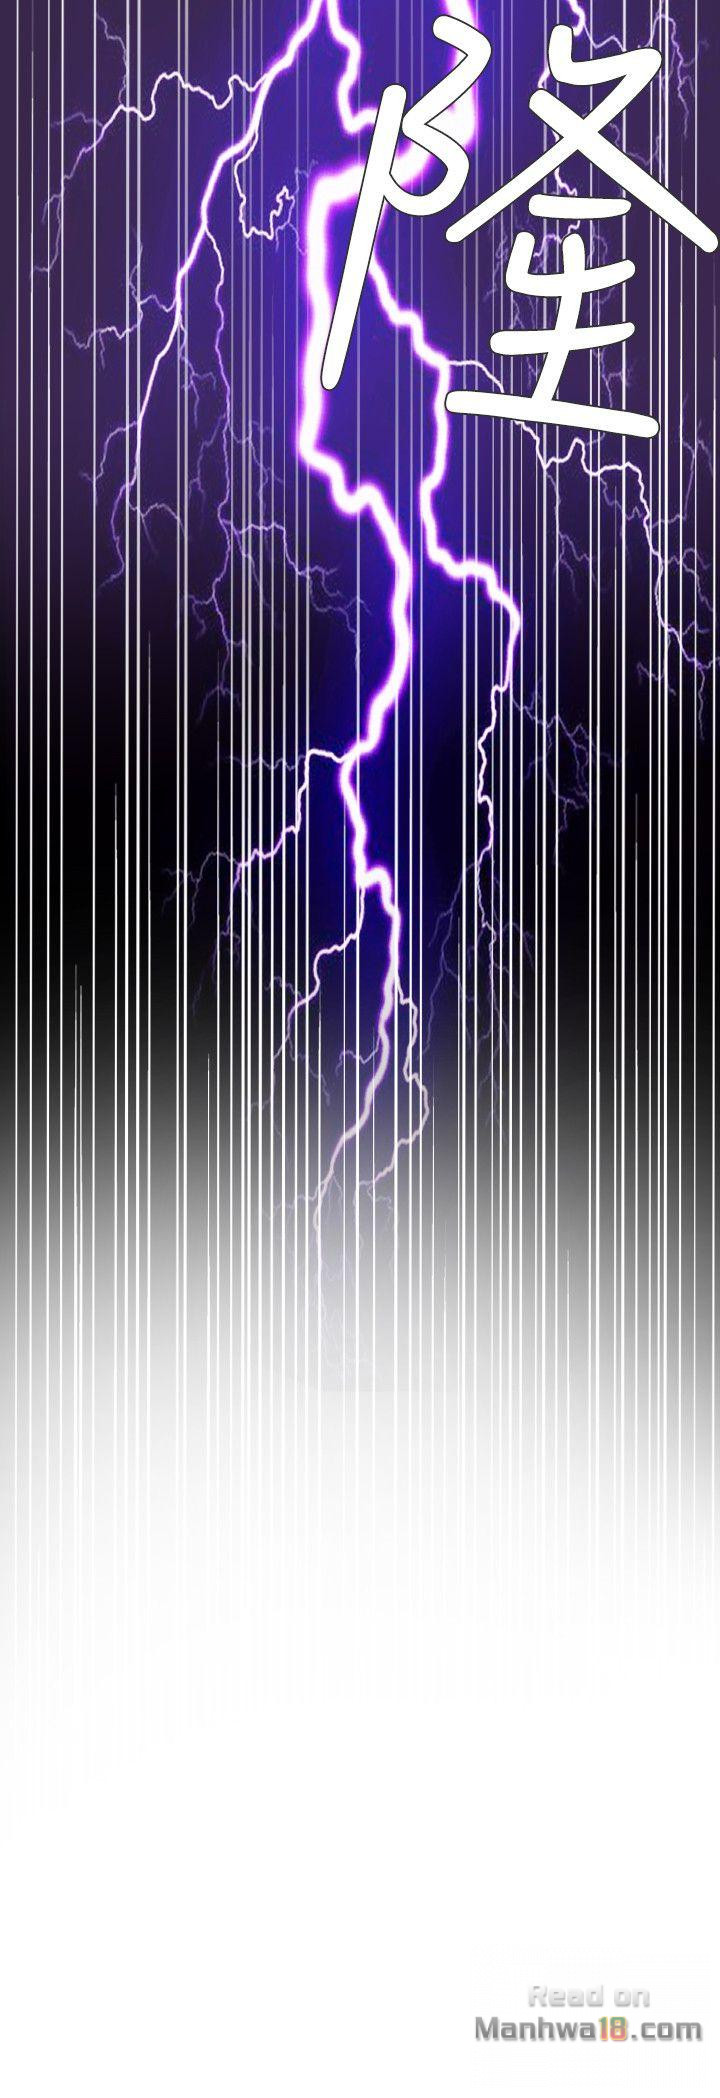 The image Lightning Rod Raw - Chapter 129 - 53DGq63BrcyVHWk - ManhwaManga.io